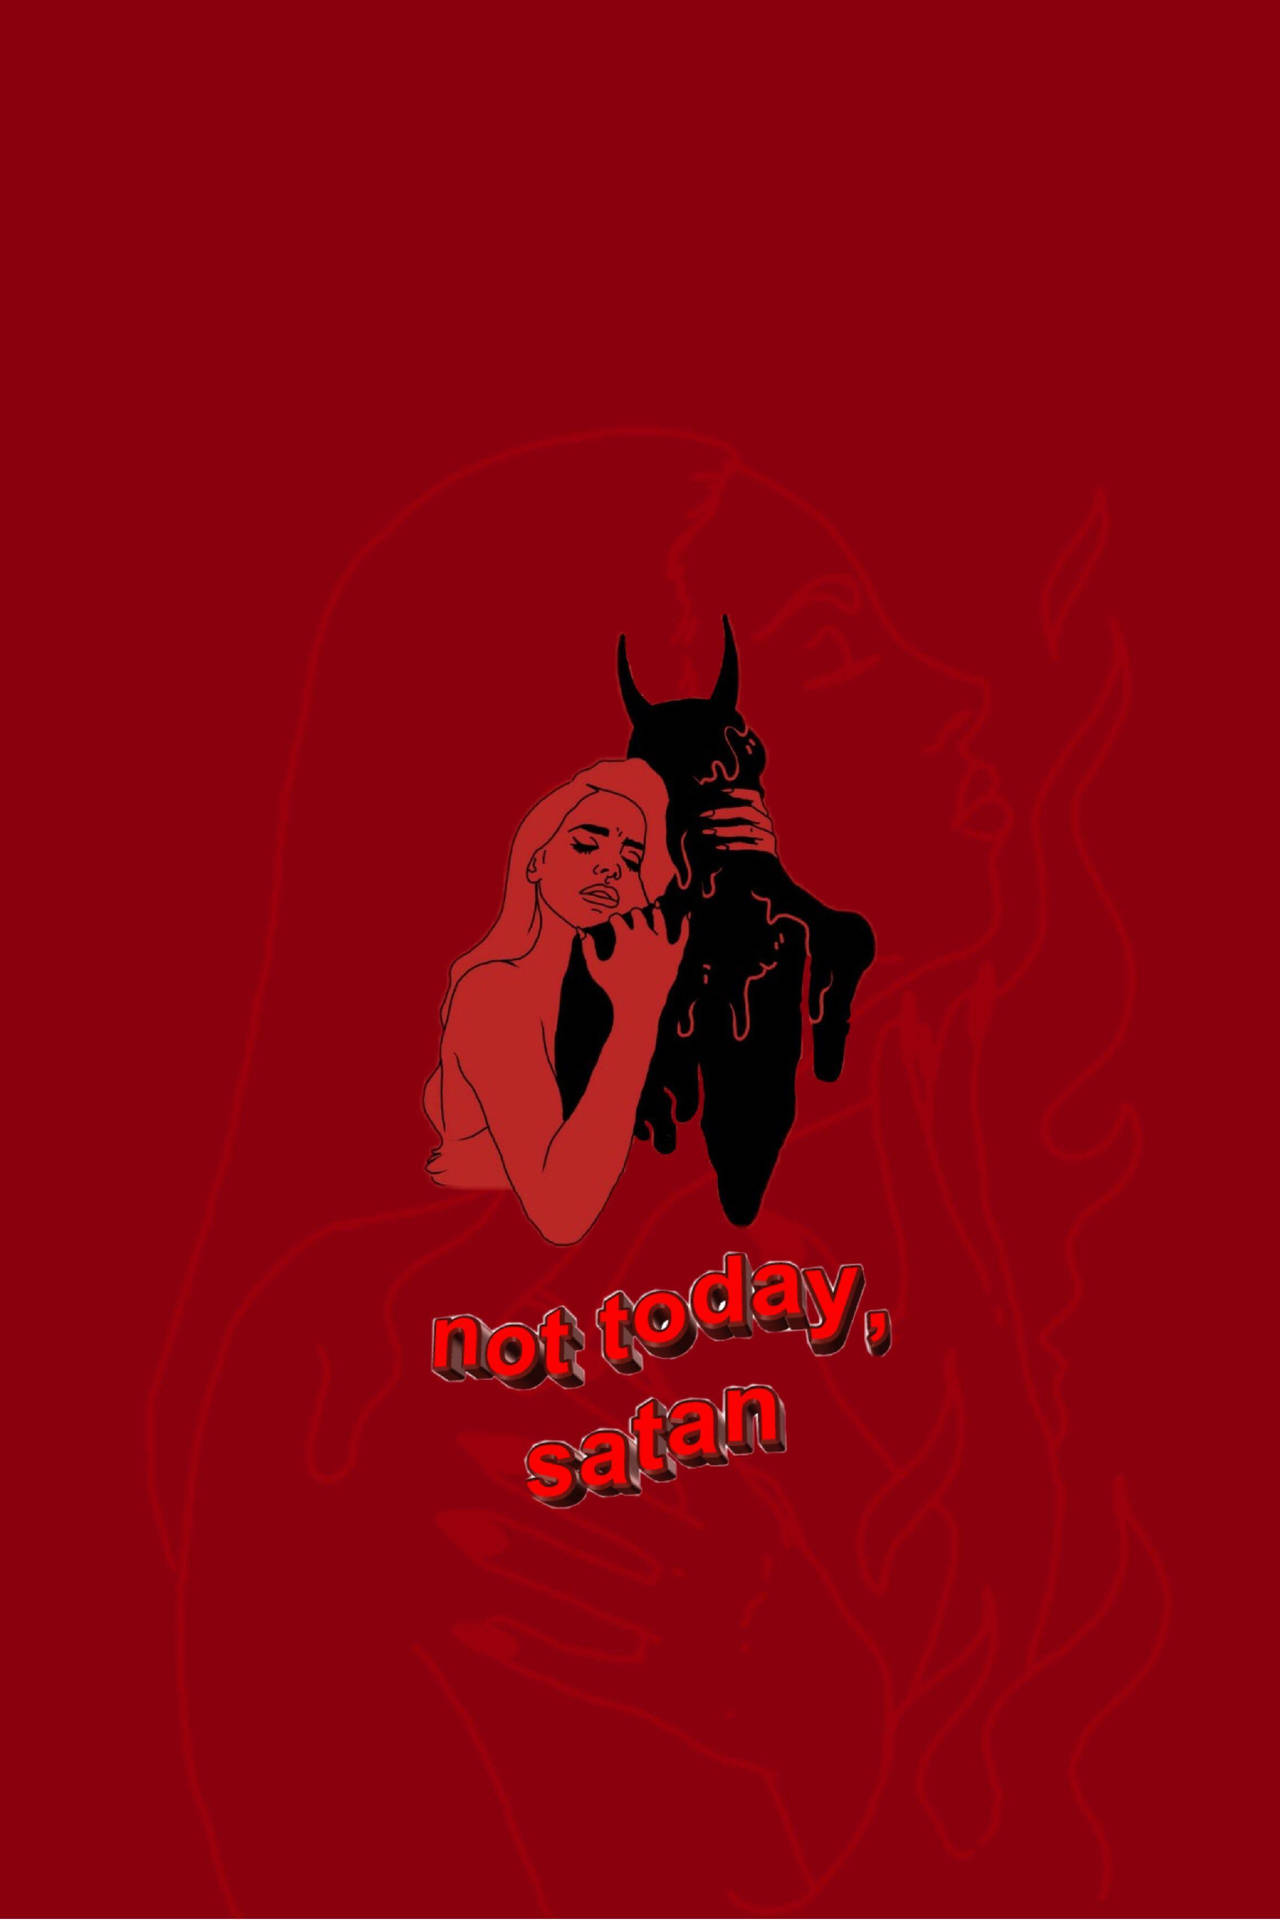 Grunge Aesthetic Red Devil Wallpaper